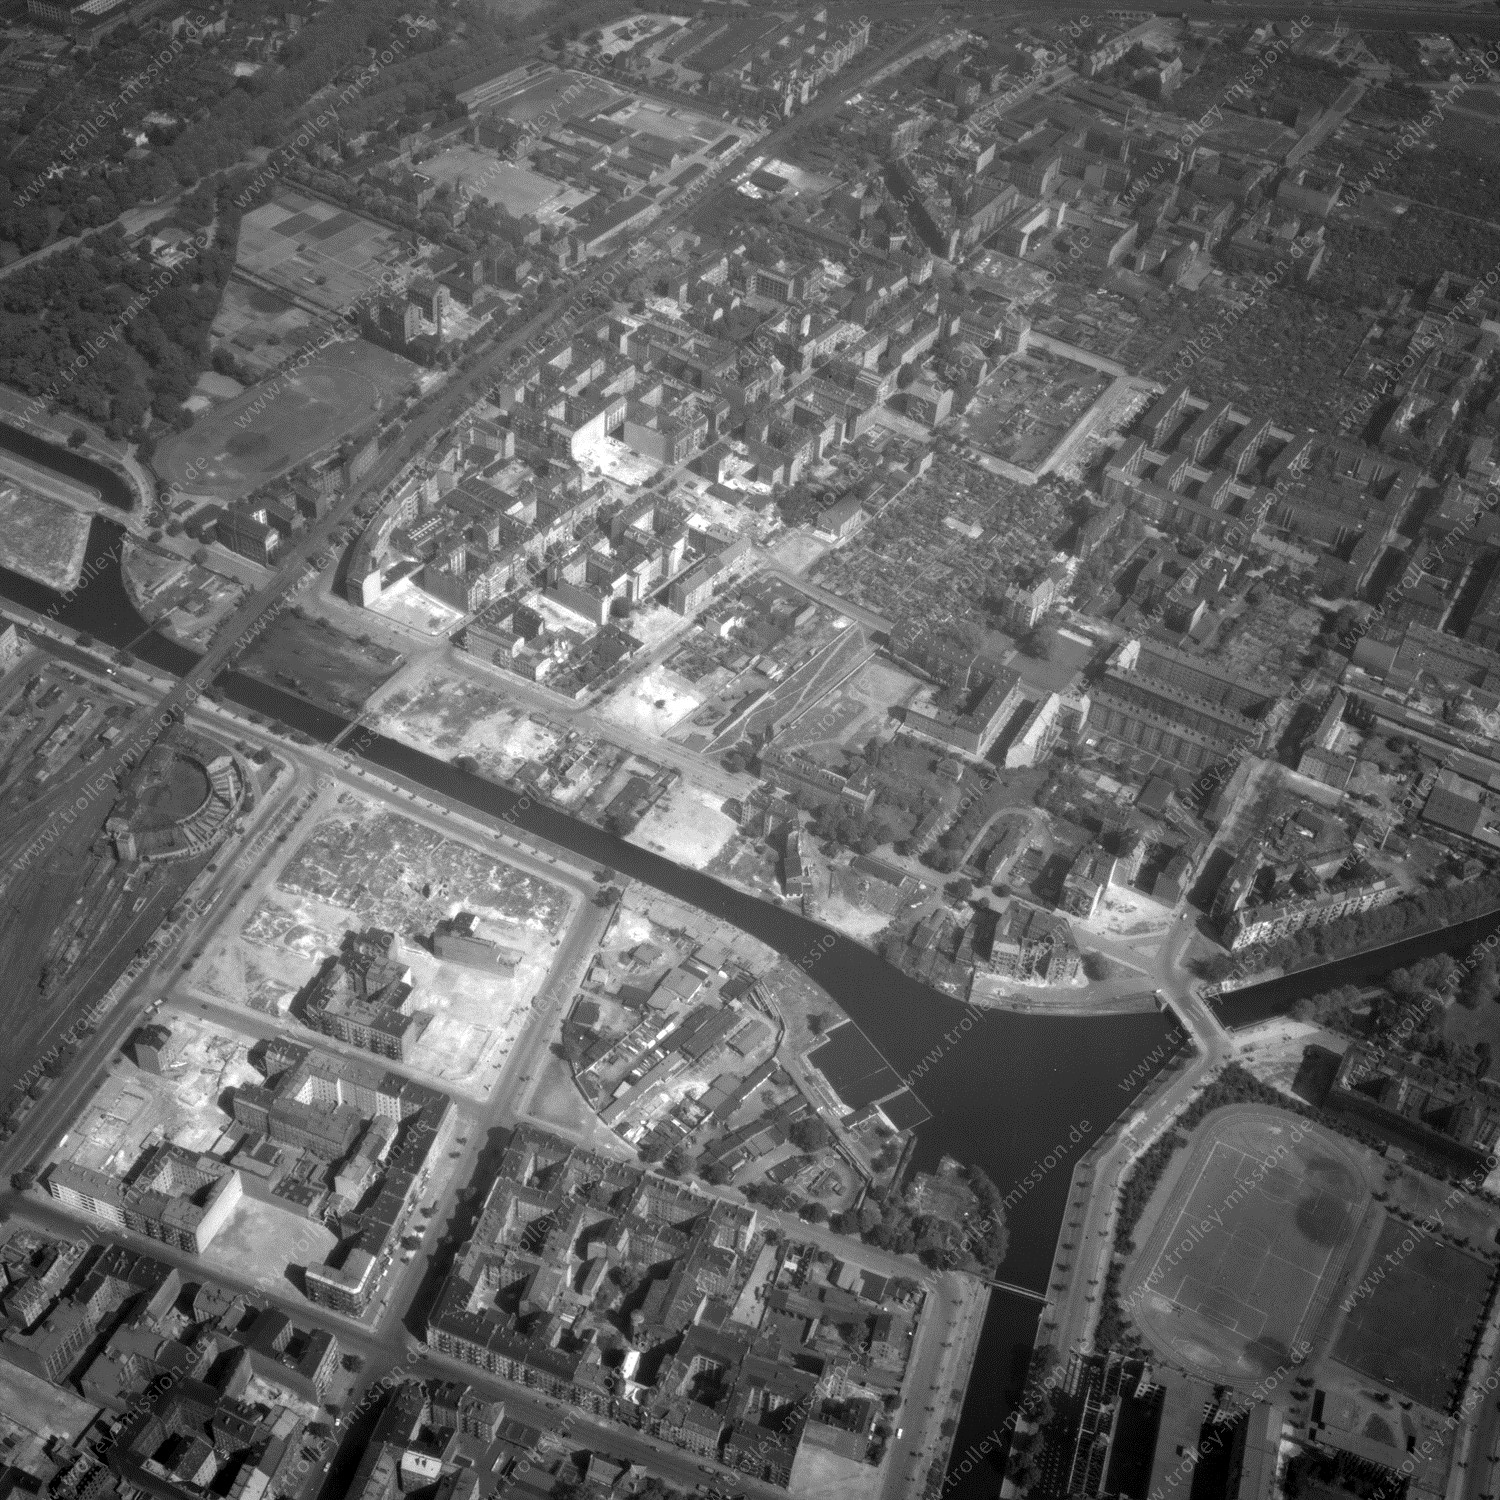 Alte Fotos und Luftbilder von Berlin - Luftbildaufnahme Nr. 03 - Historische Luftaufnahmen von West-Berlin aus dem Jahr 1954 - Flugstrecke November